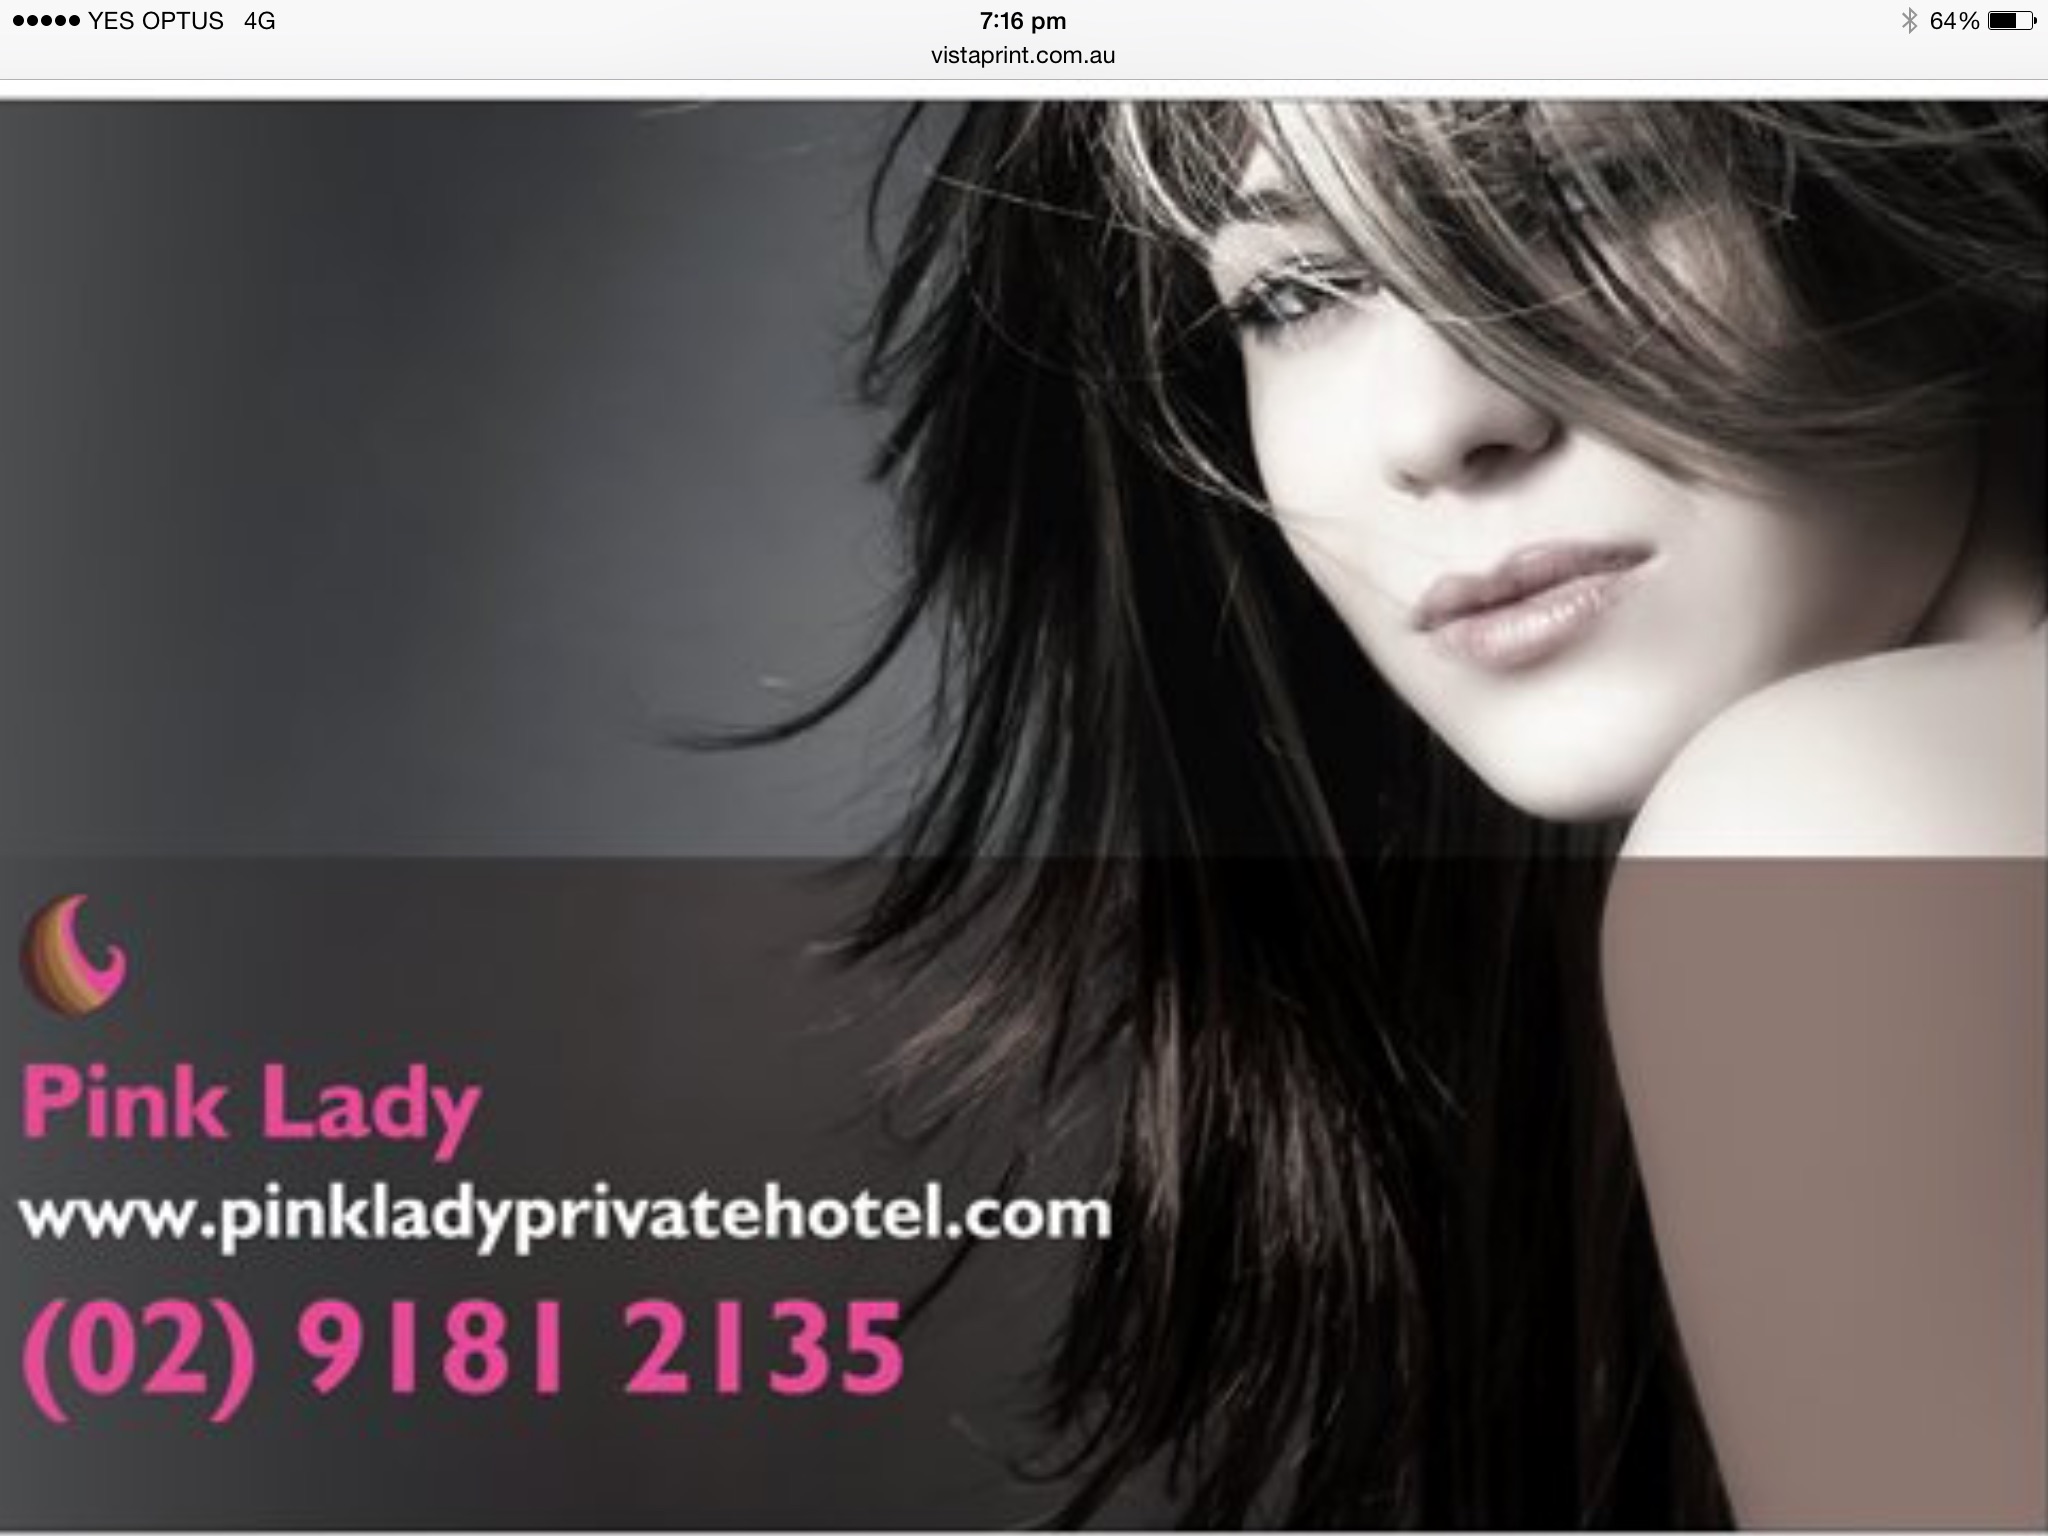 Pink Lady Private Hotel - Hervey Bay Accommodation